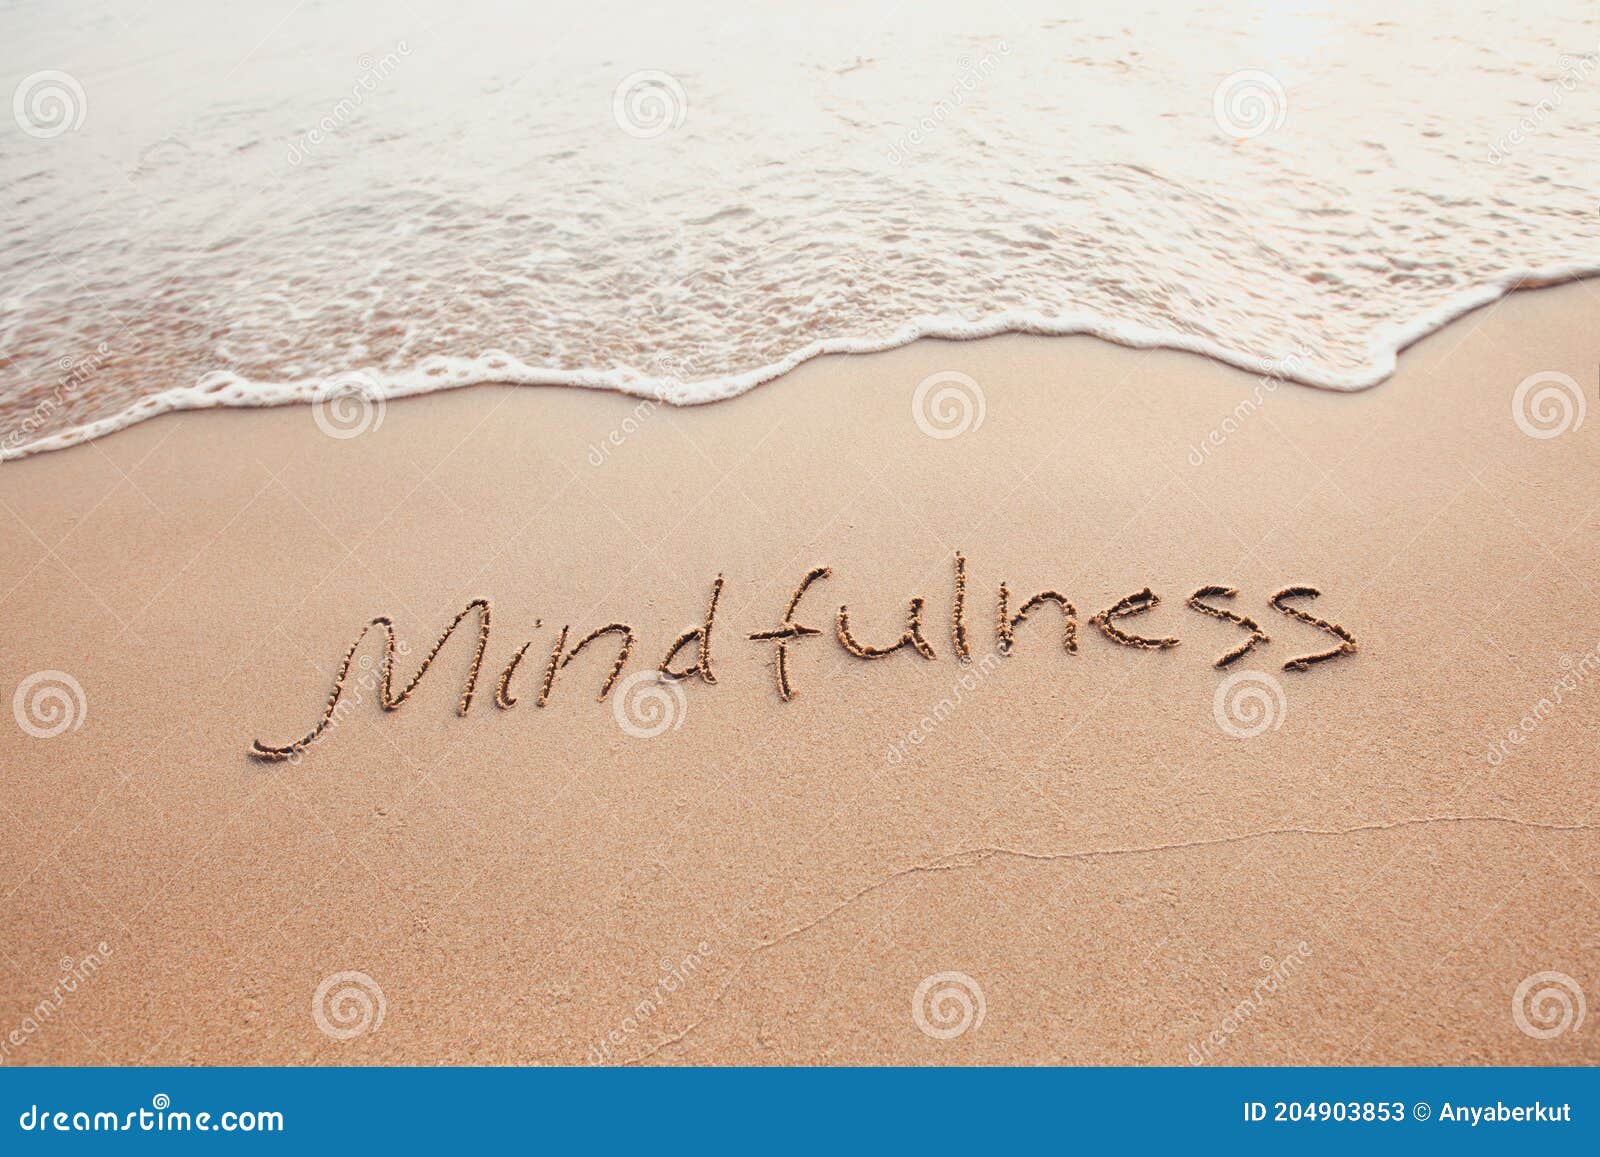 mindfulness concept, mindful living